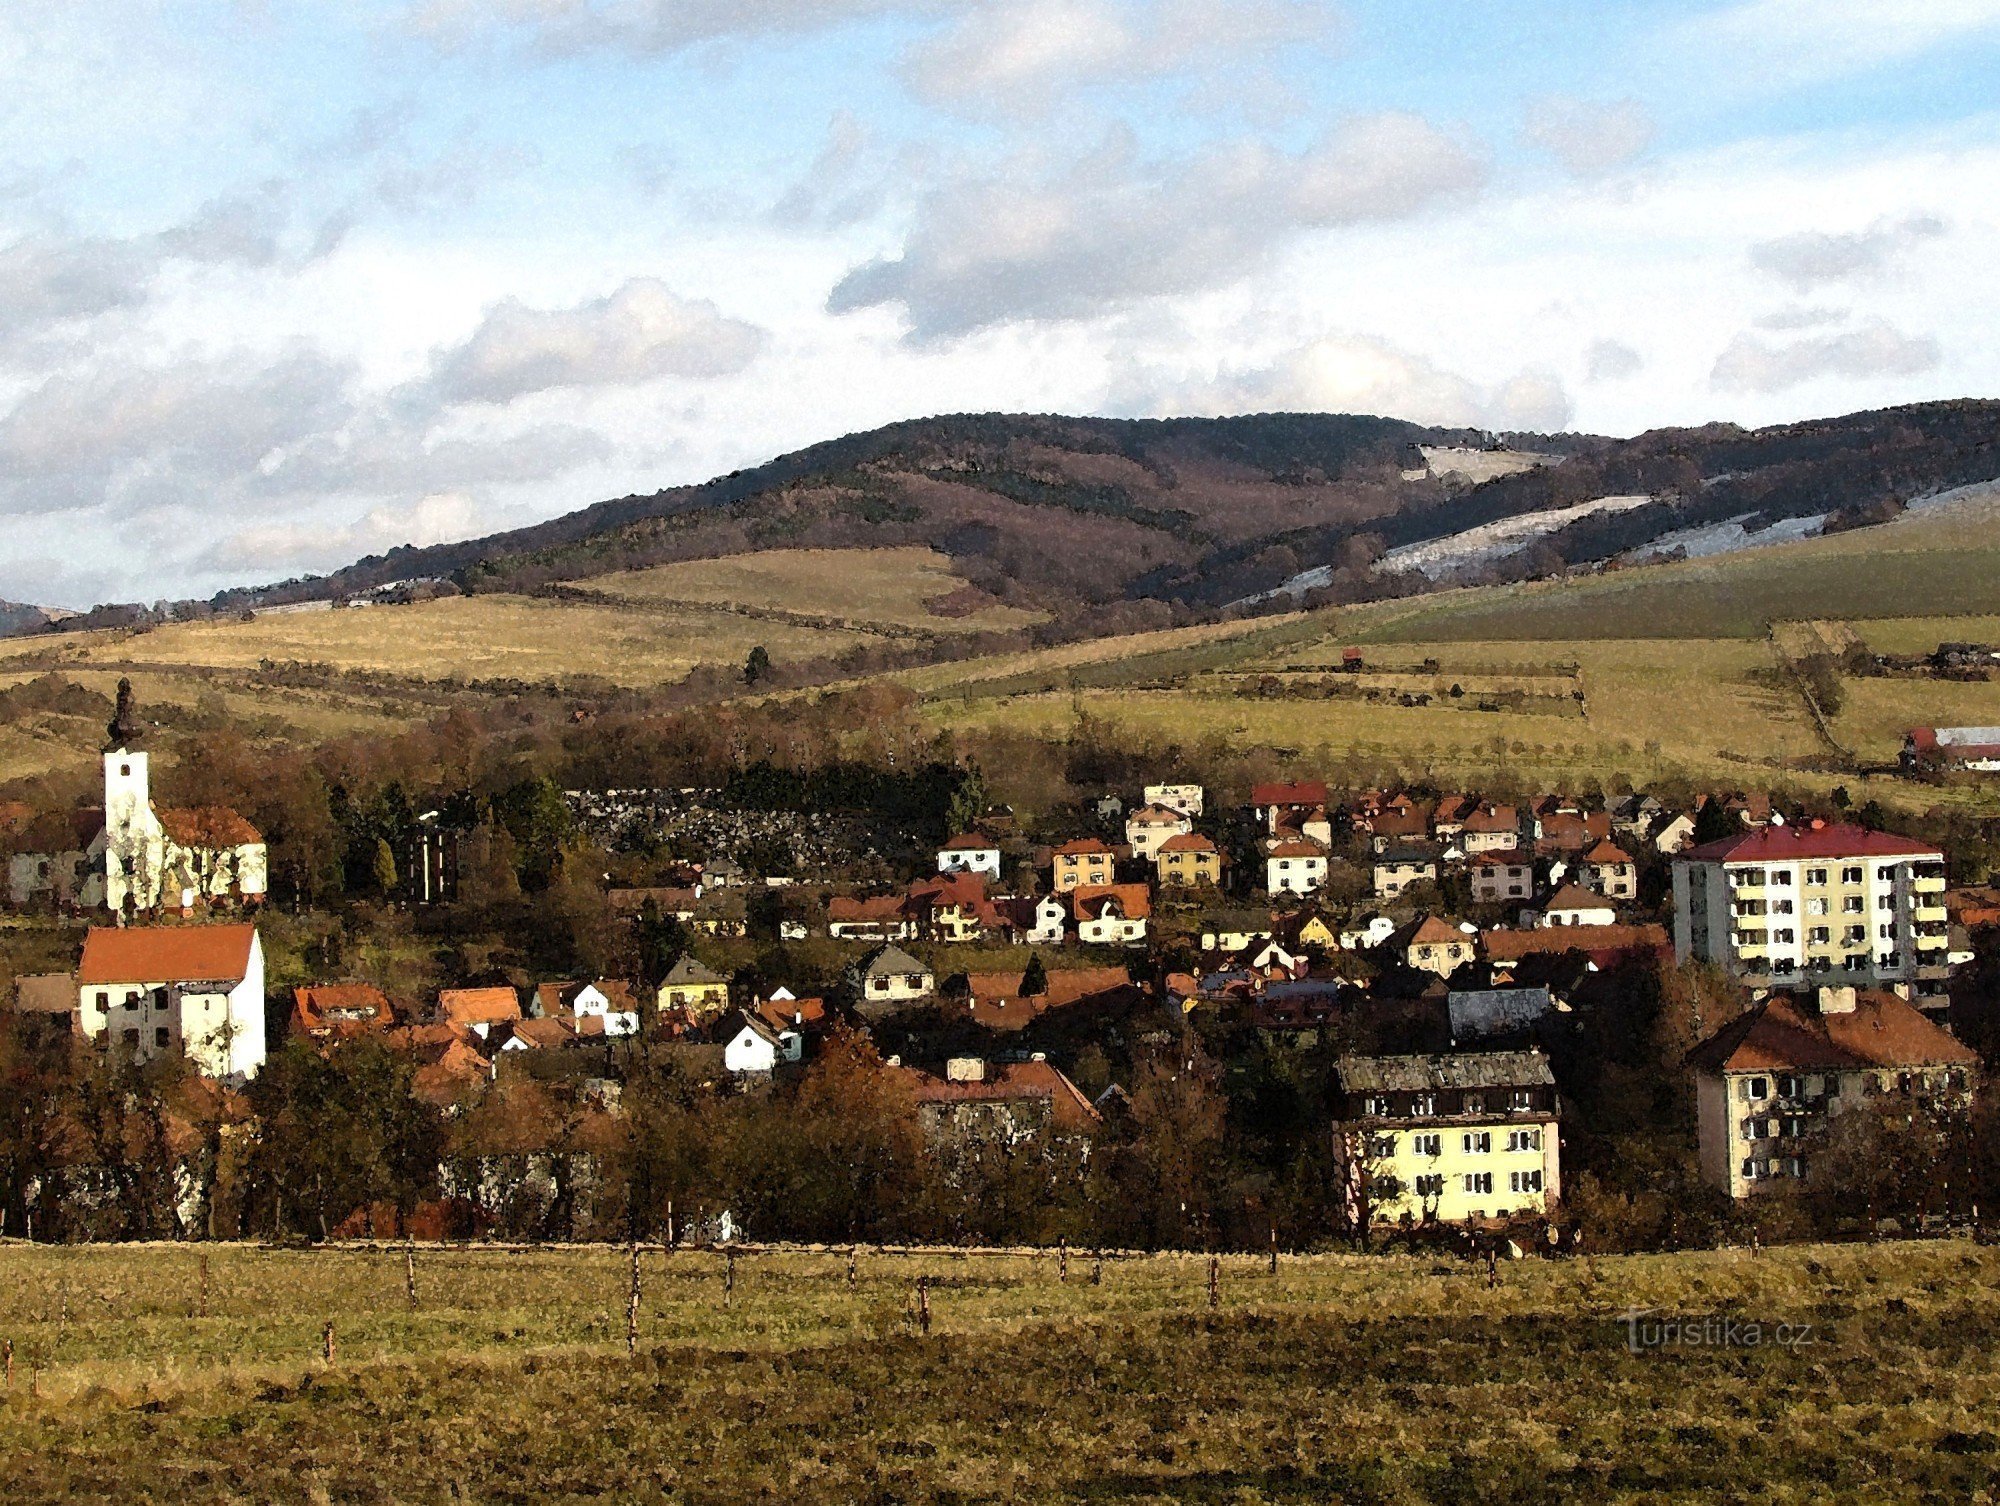 de stad Brumov - Bylnice op de achtergrond met Holý vrch